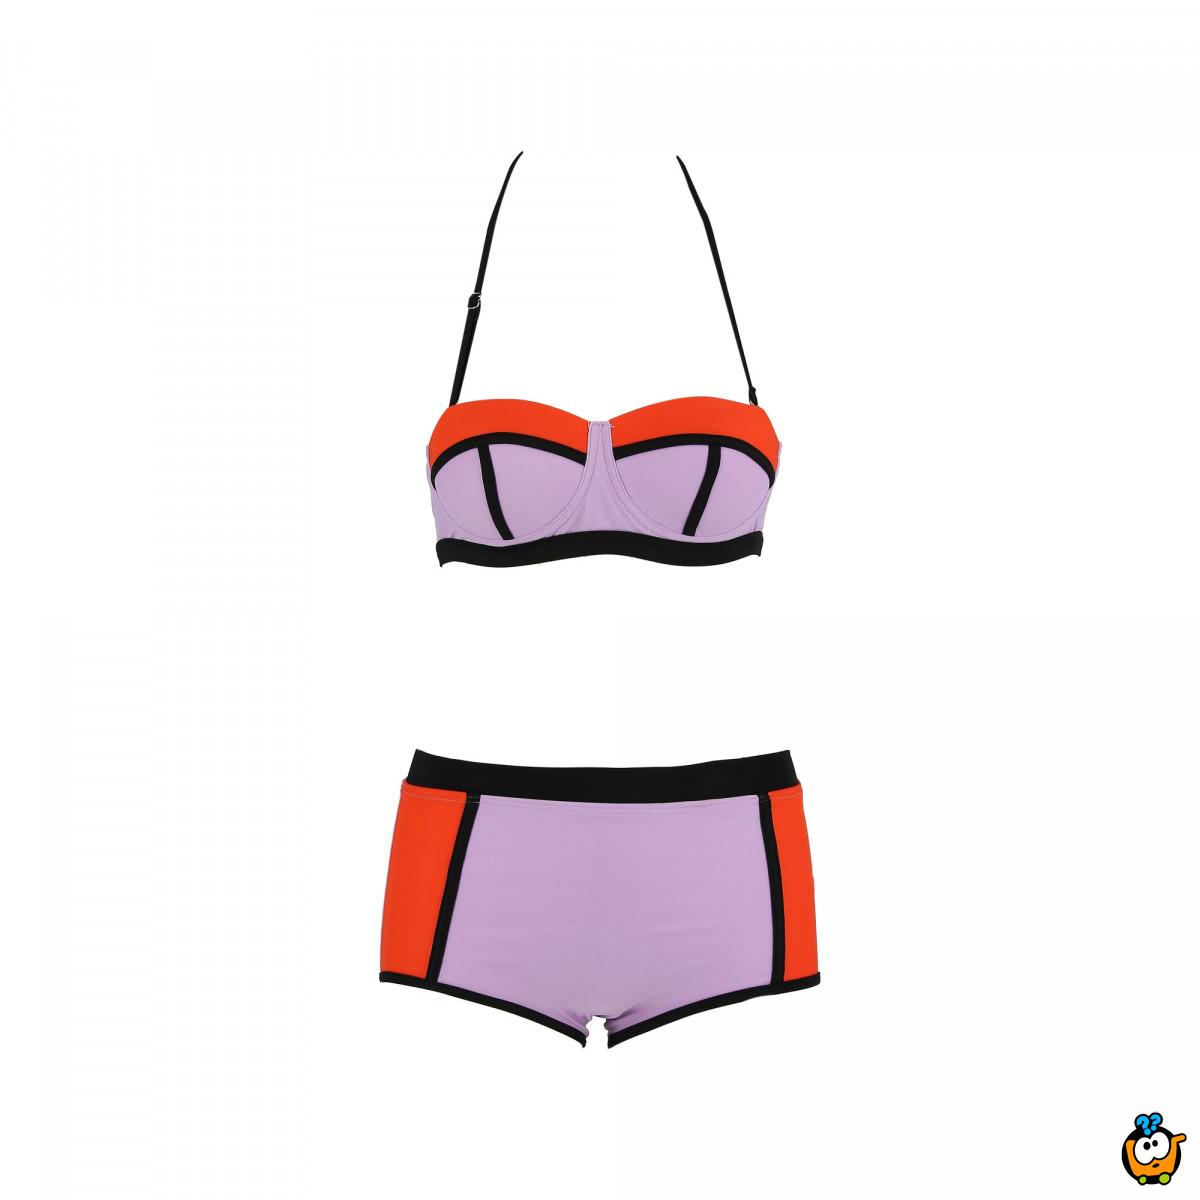 Dvodelni ženski kupaći kostim - LINES MIX ORANGE